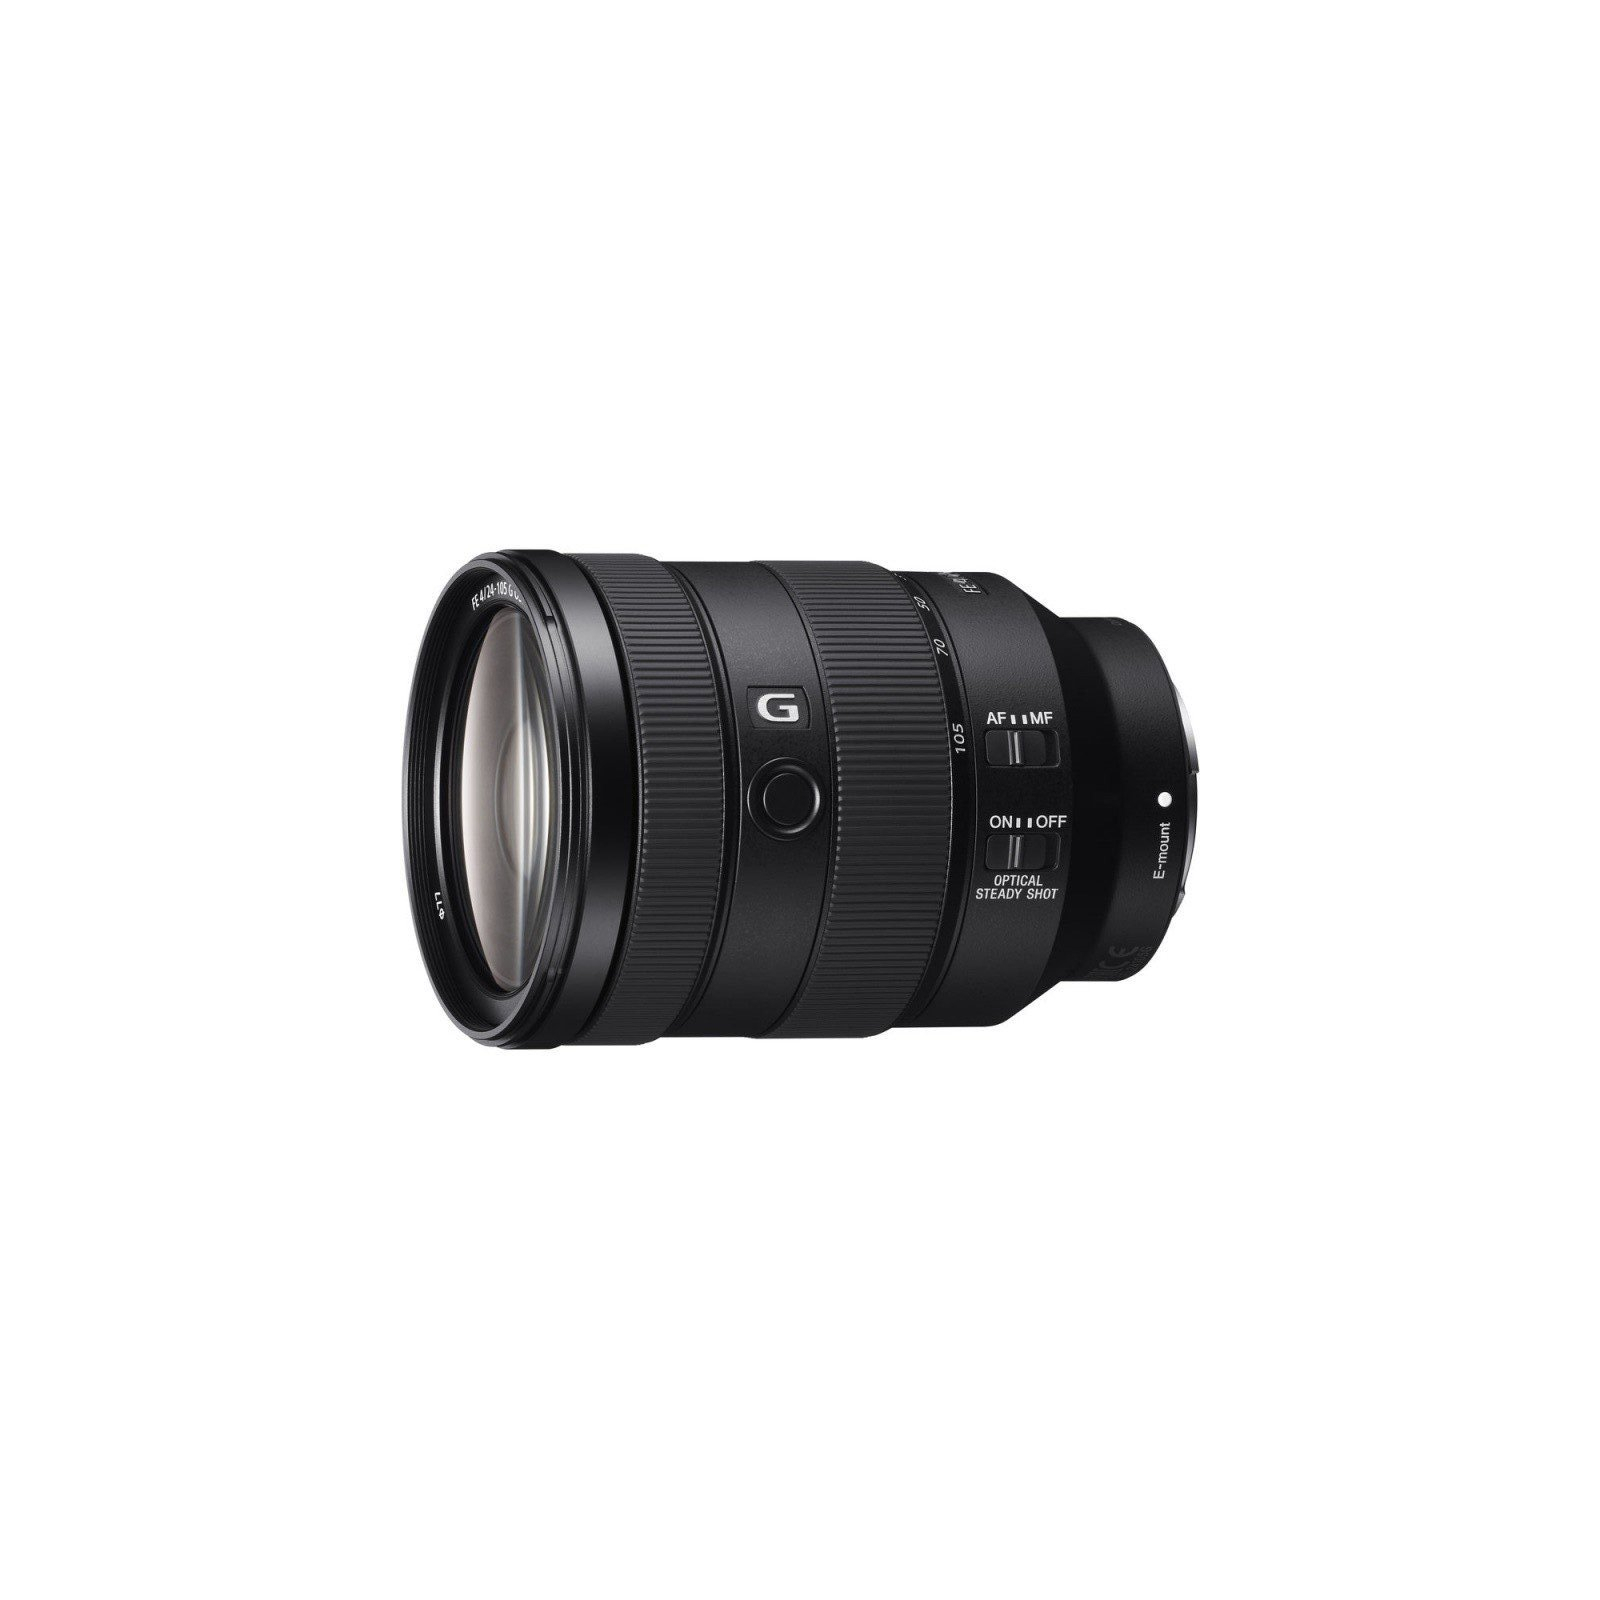 Об'єктив Sony 24-105mm f/4.0 G OSS для NEX FF (SEL24105G.SYX) зображення 2